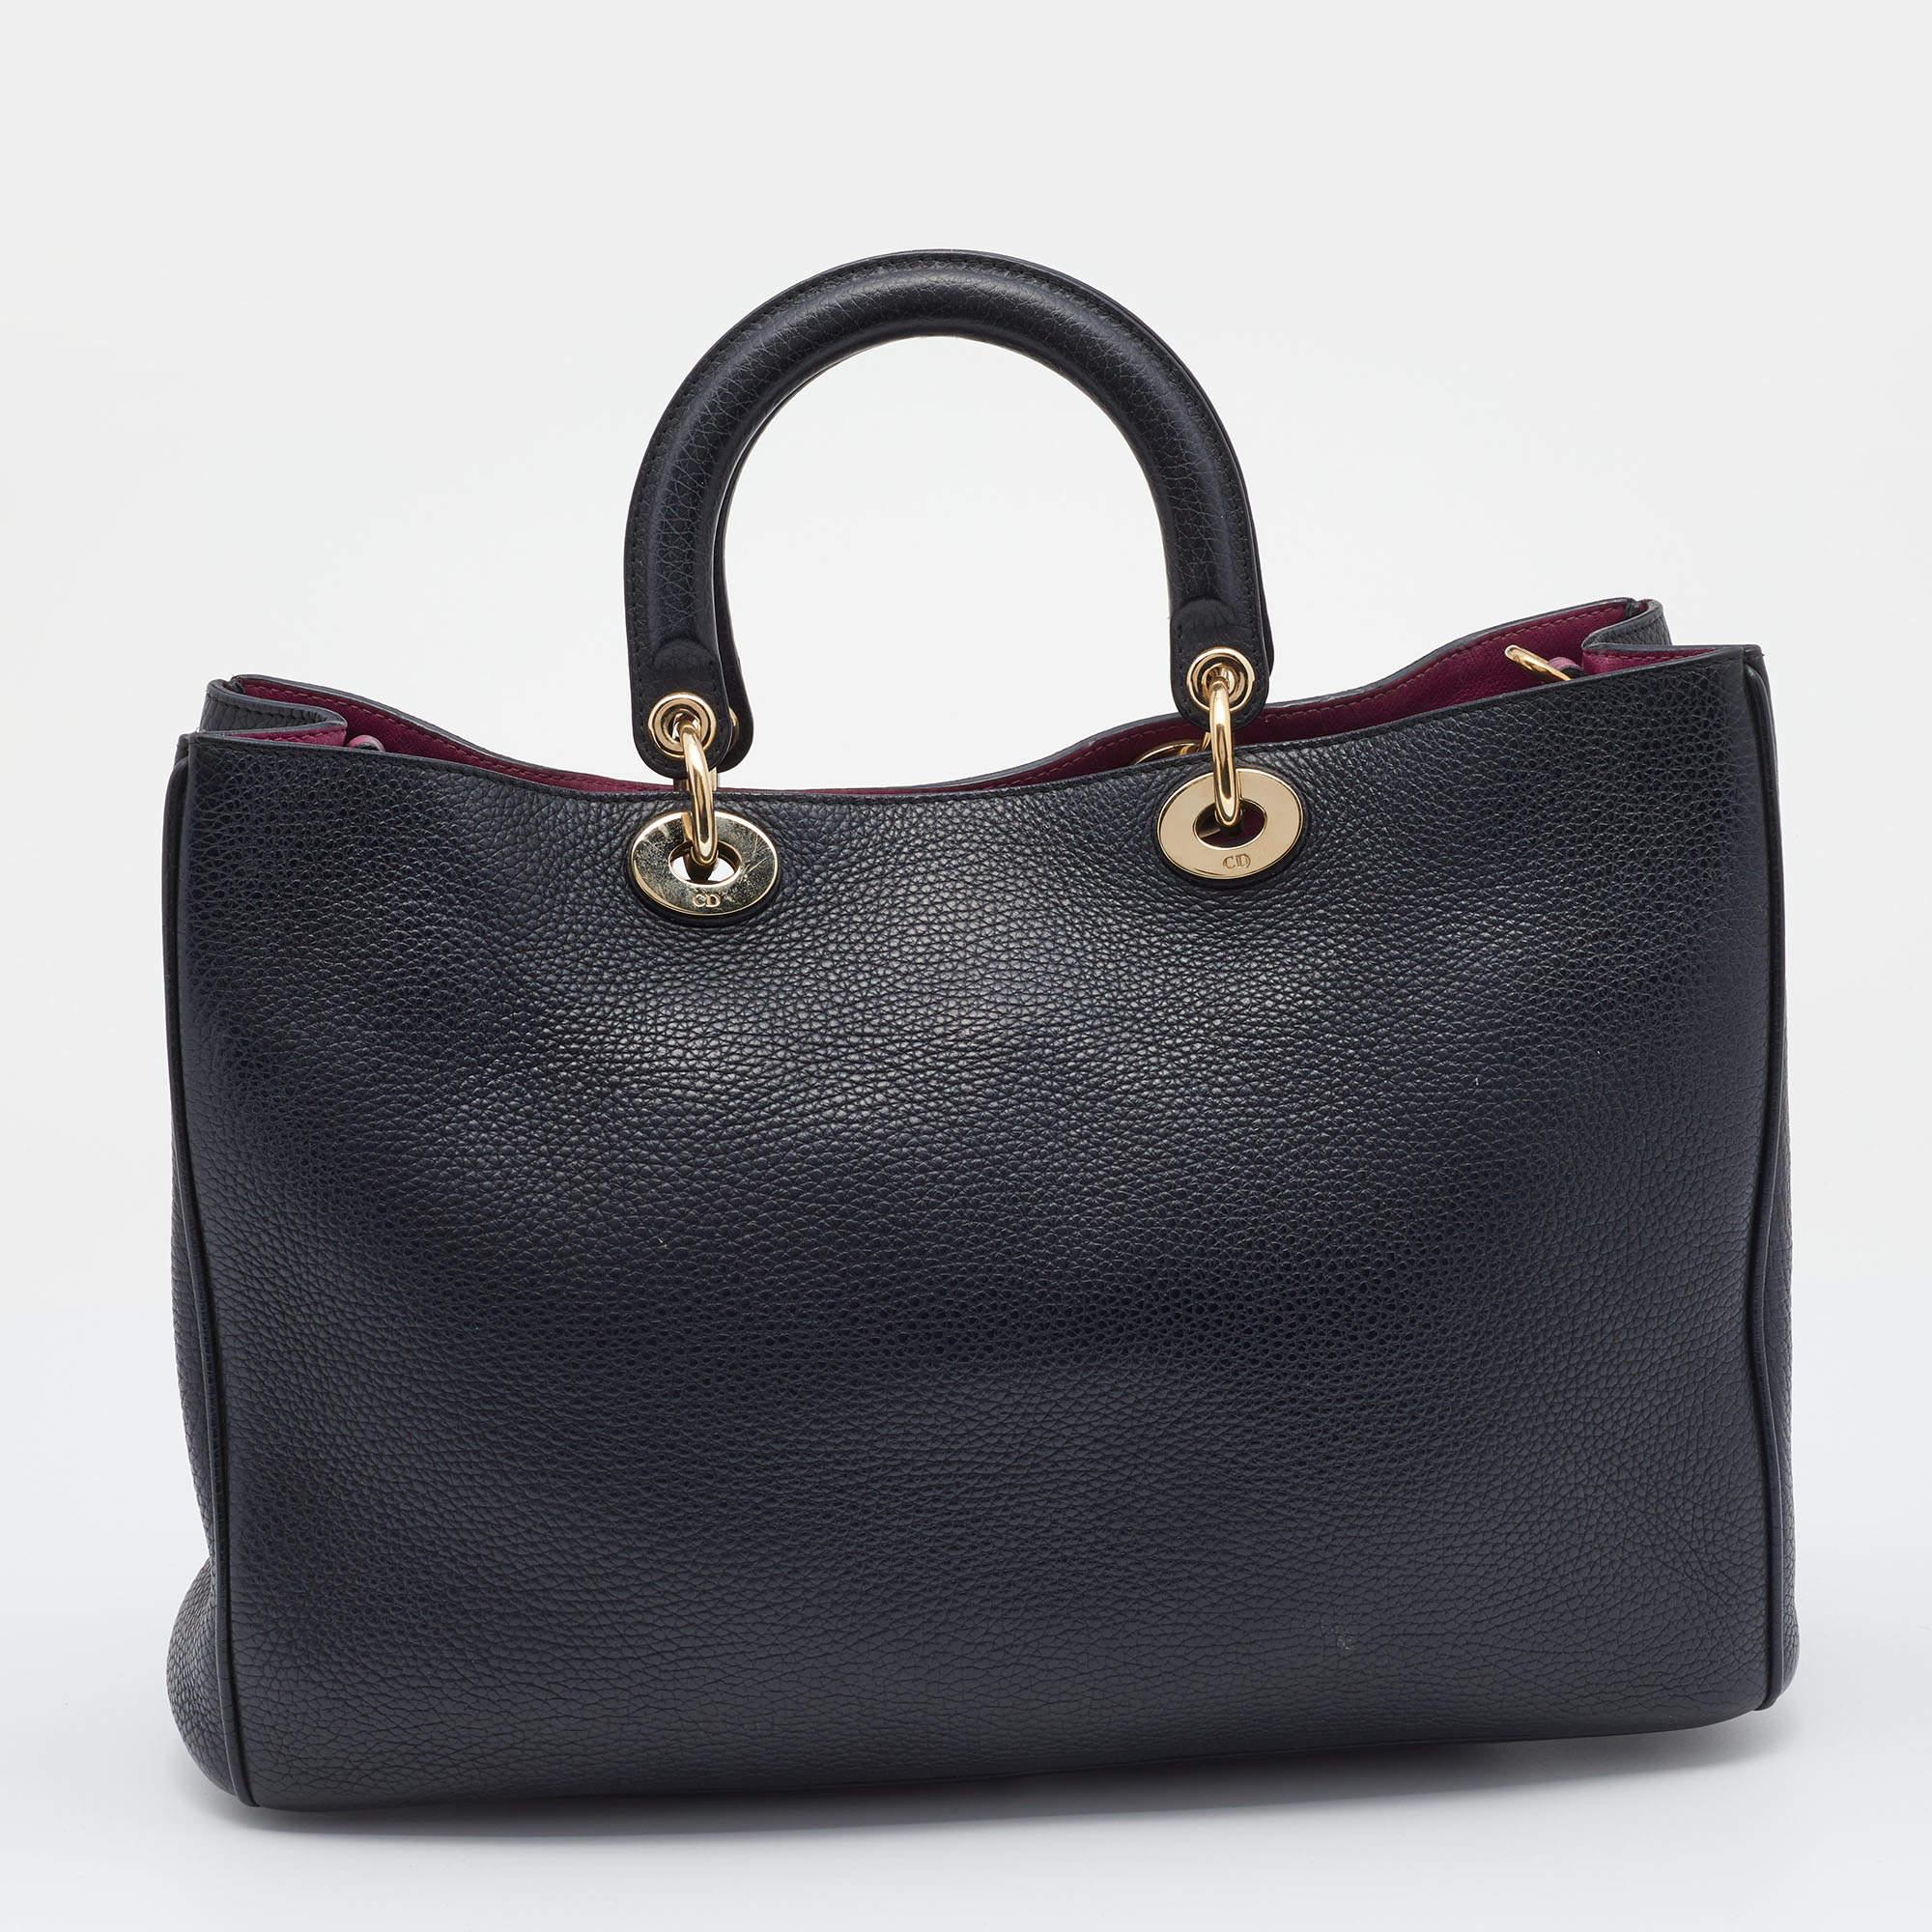 Ce sac Diorissimo Shopper de la Maison Dior vous permettra de ranger vos affaires en toute sécurité et avec style. L'extérieur est en cuir et le devant est orné de charmes D.I.O.R. aux tons dorés. Il est doté de deux poignées, d'une bandoulière et